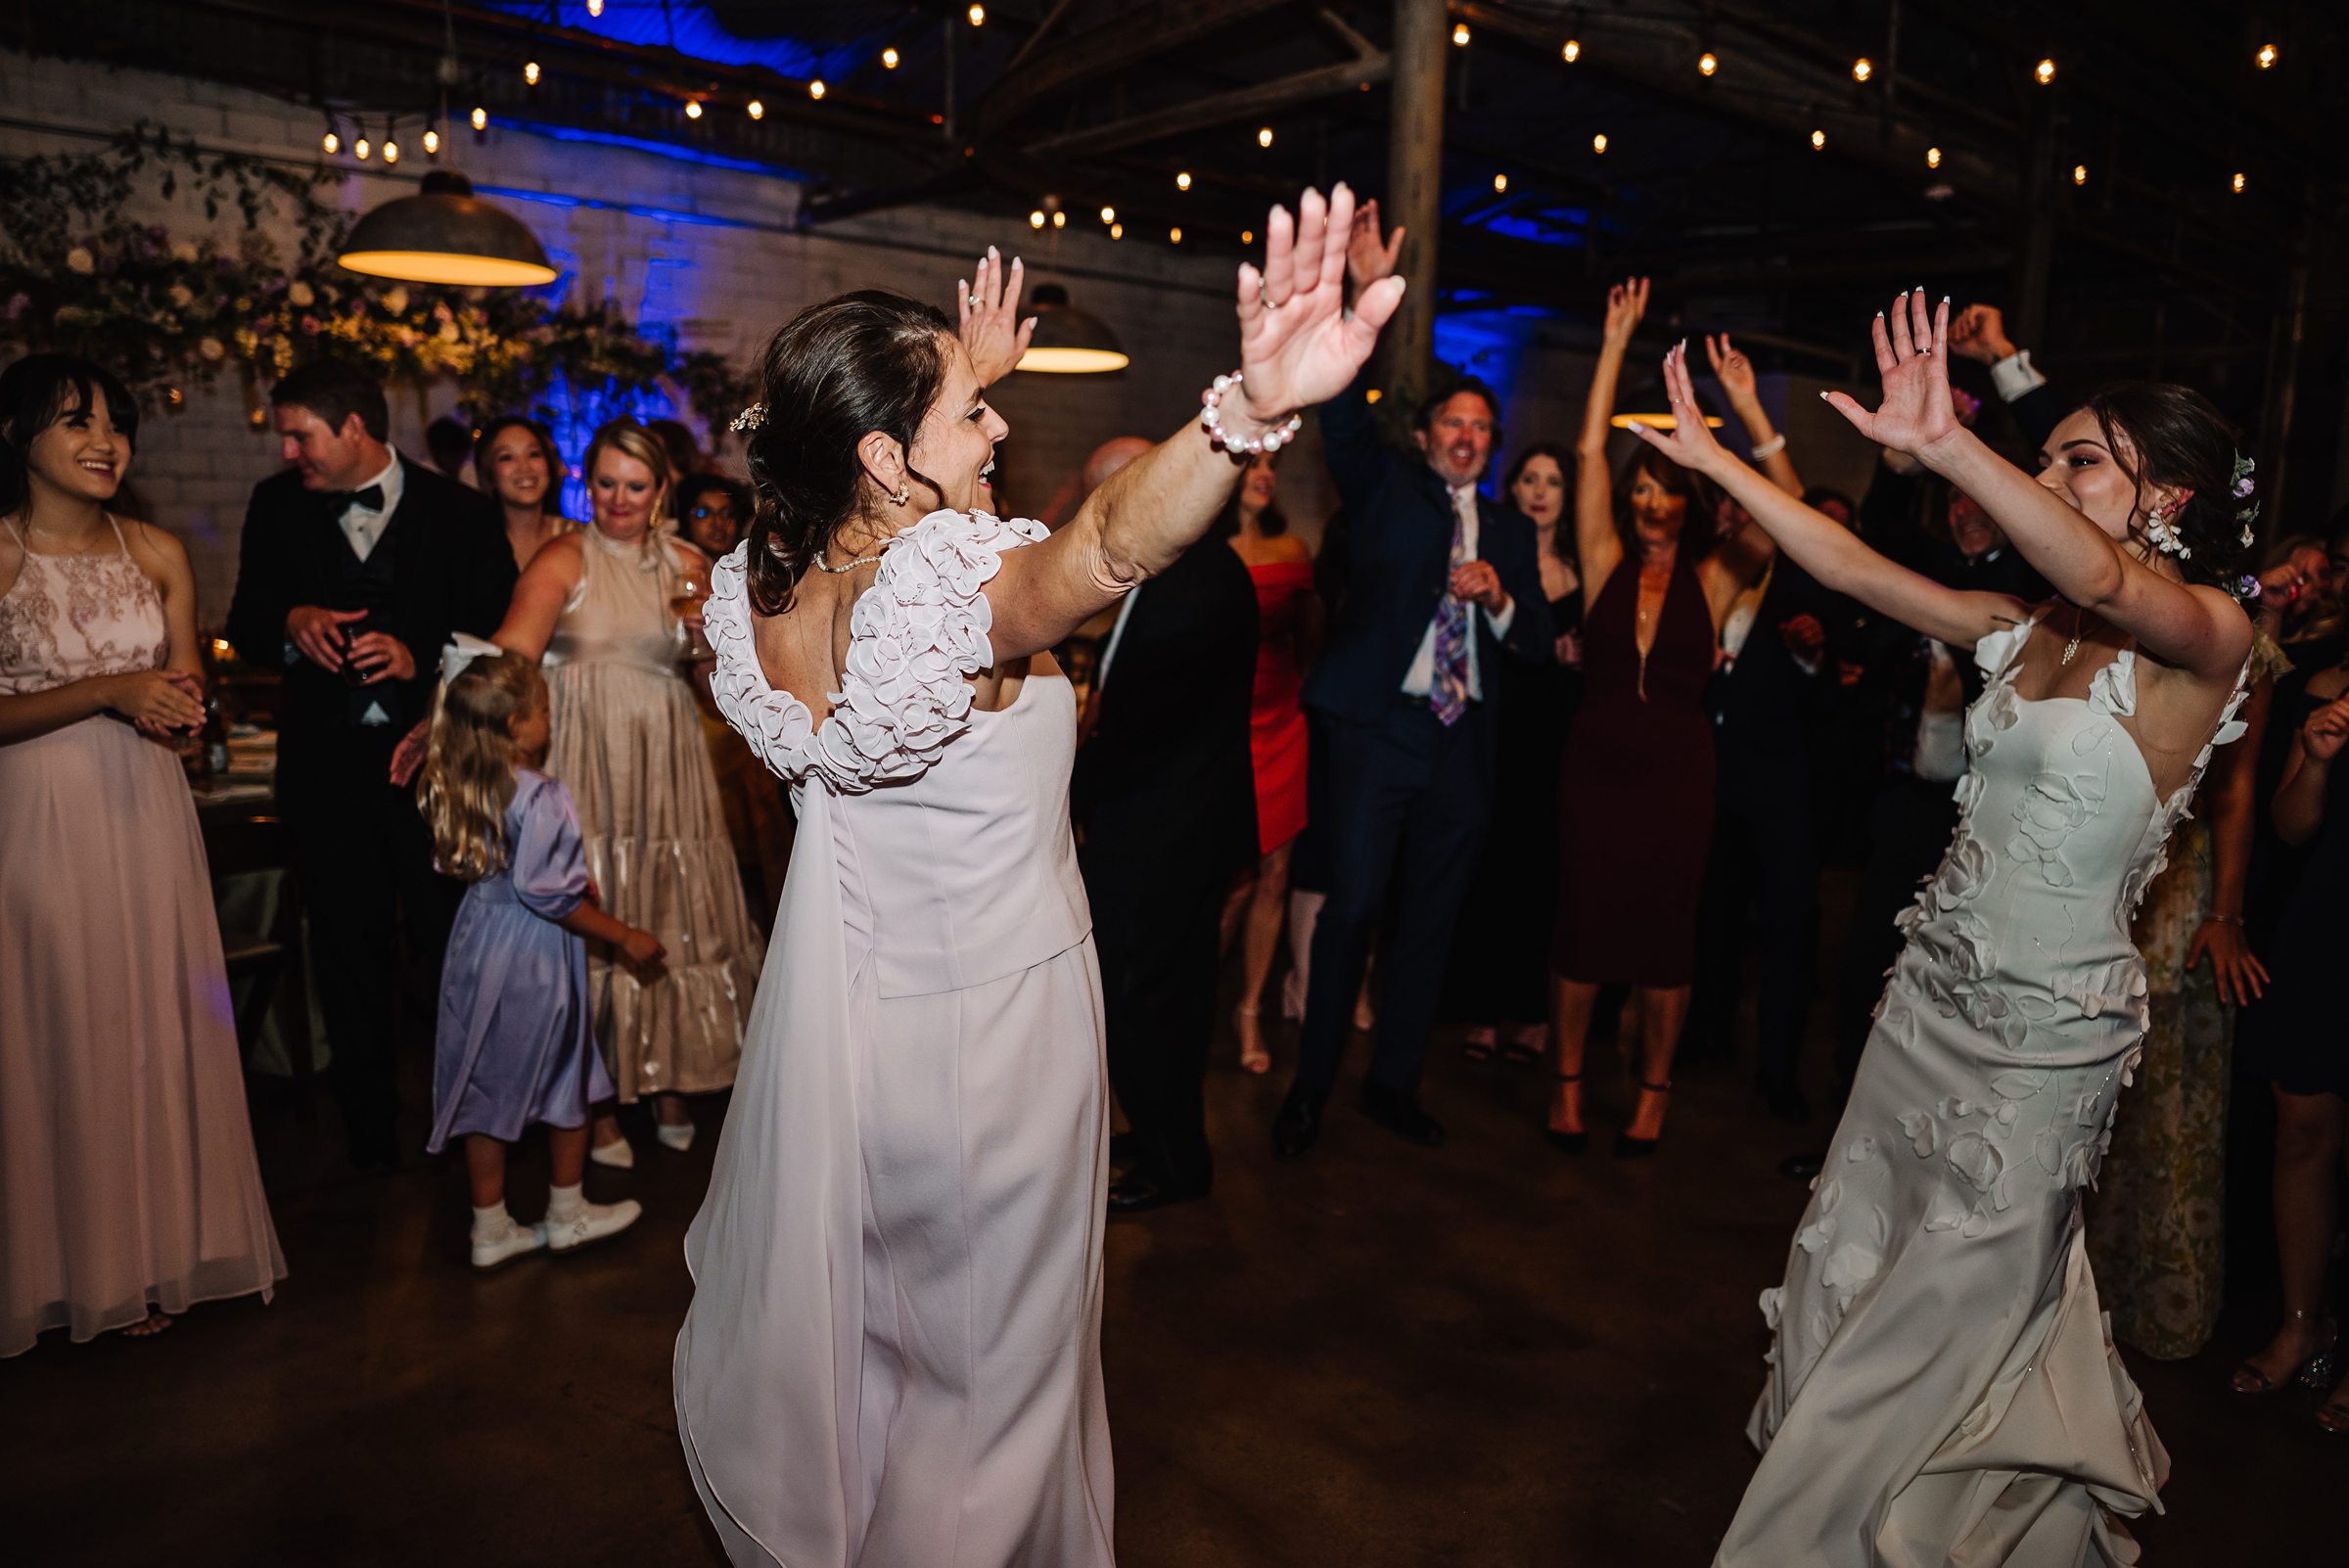 bride dancing with mom at wedding reception